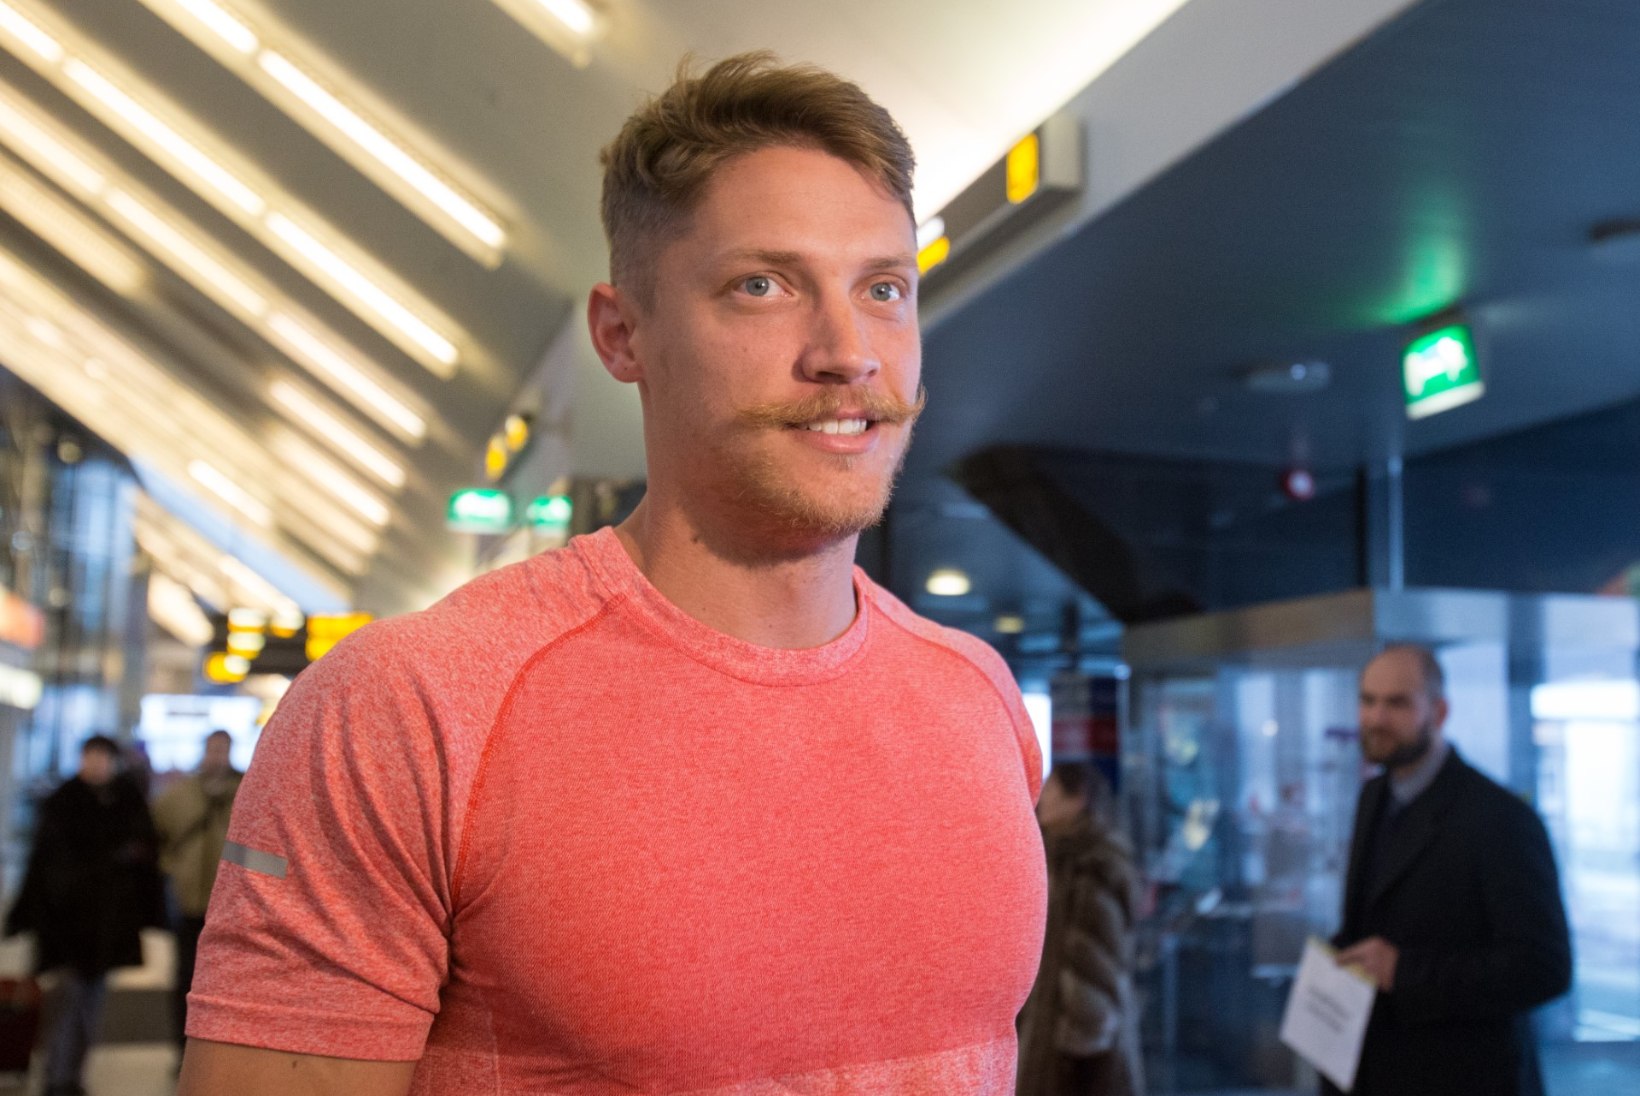 FOTOD: Trey Hardee saabus Eestisse paljaste säärte ja lustaka vuntsiga